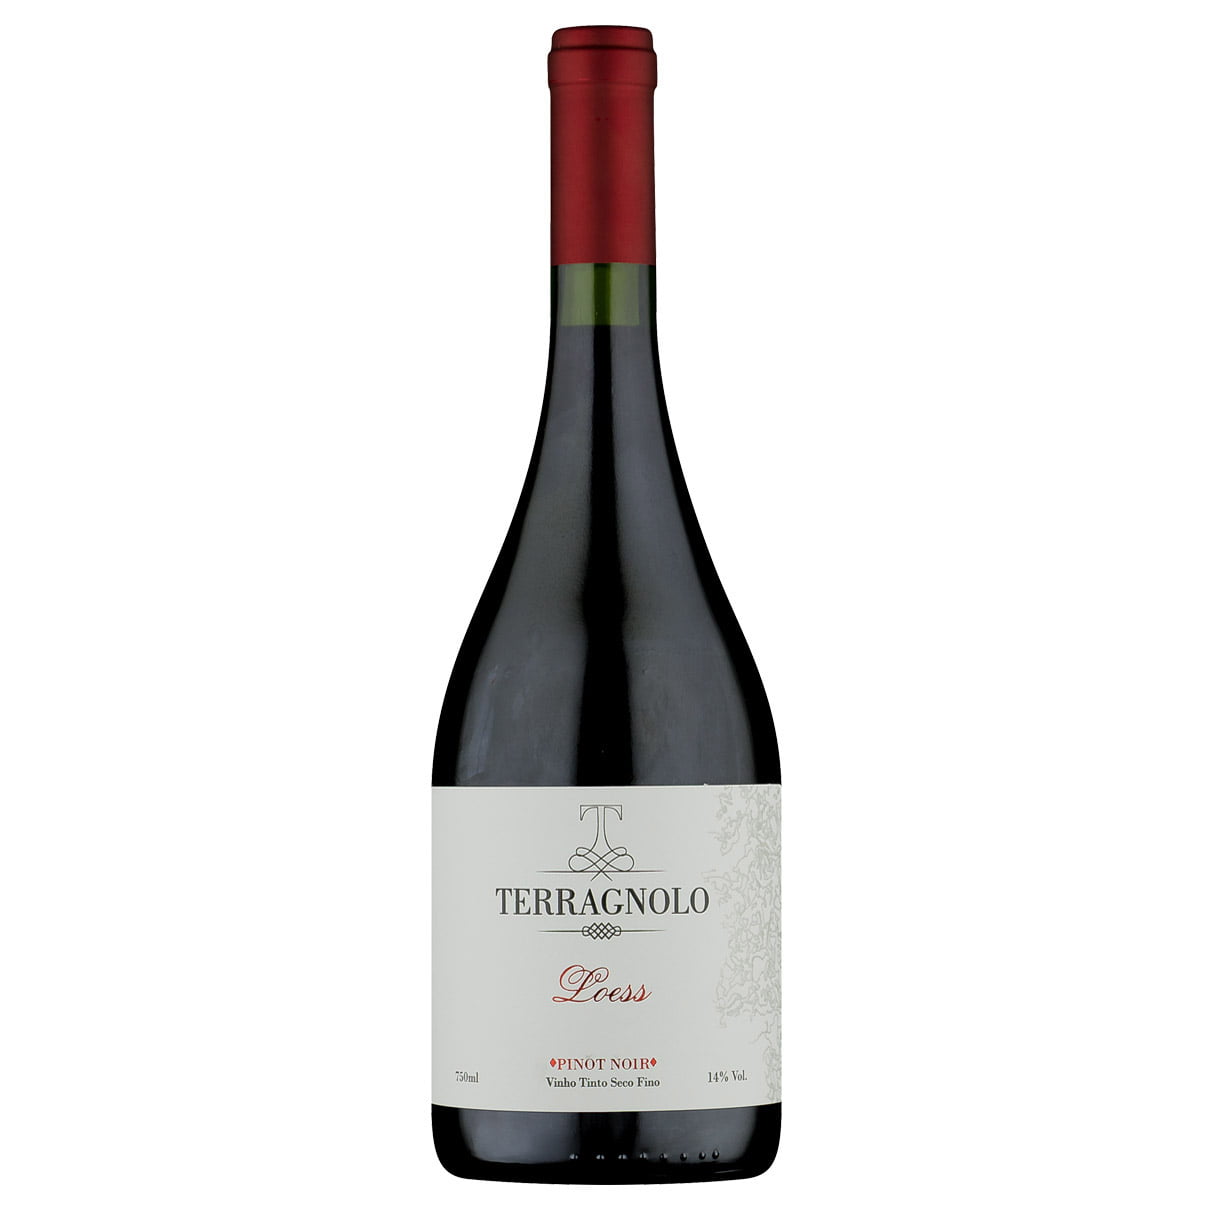 Terragnolo Loess Pinot Noir 2018